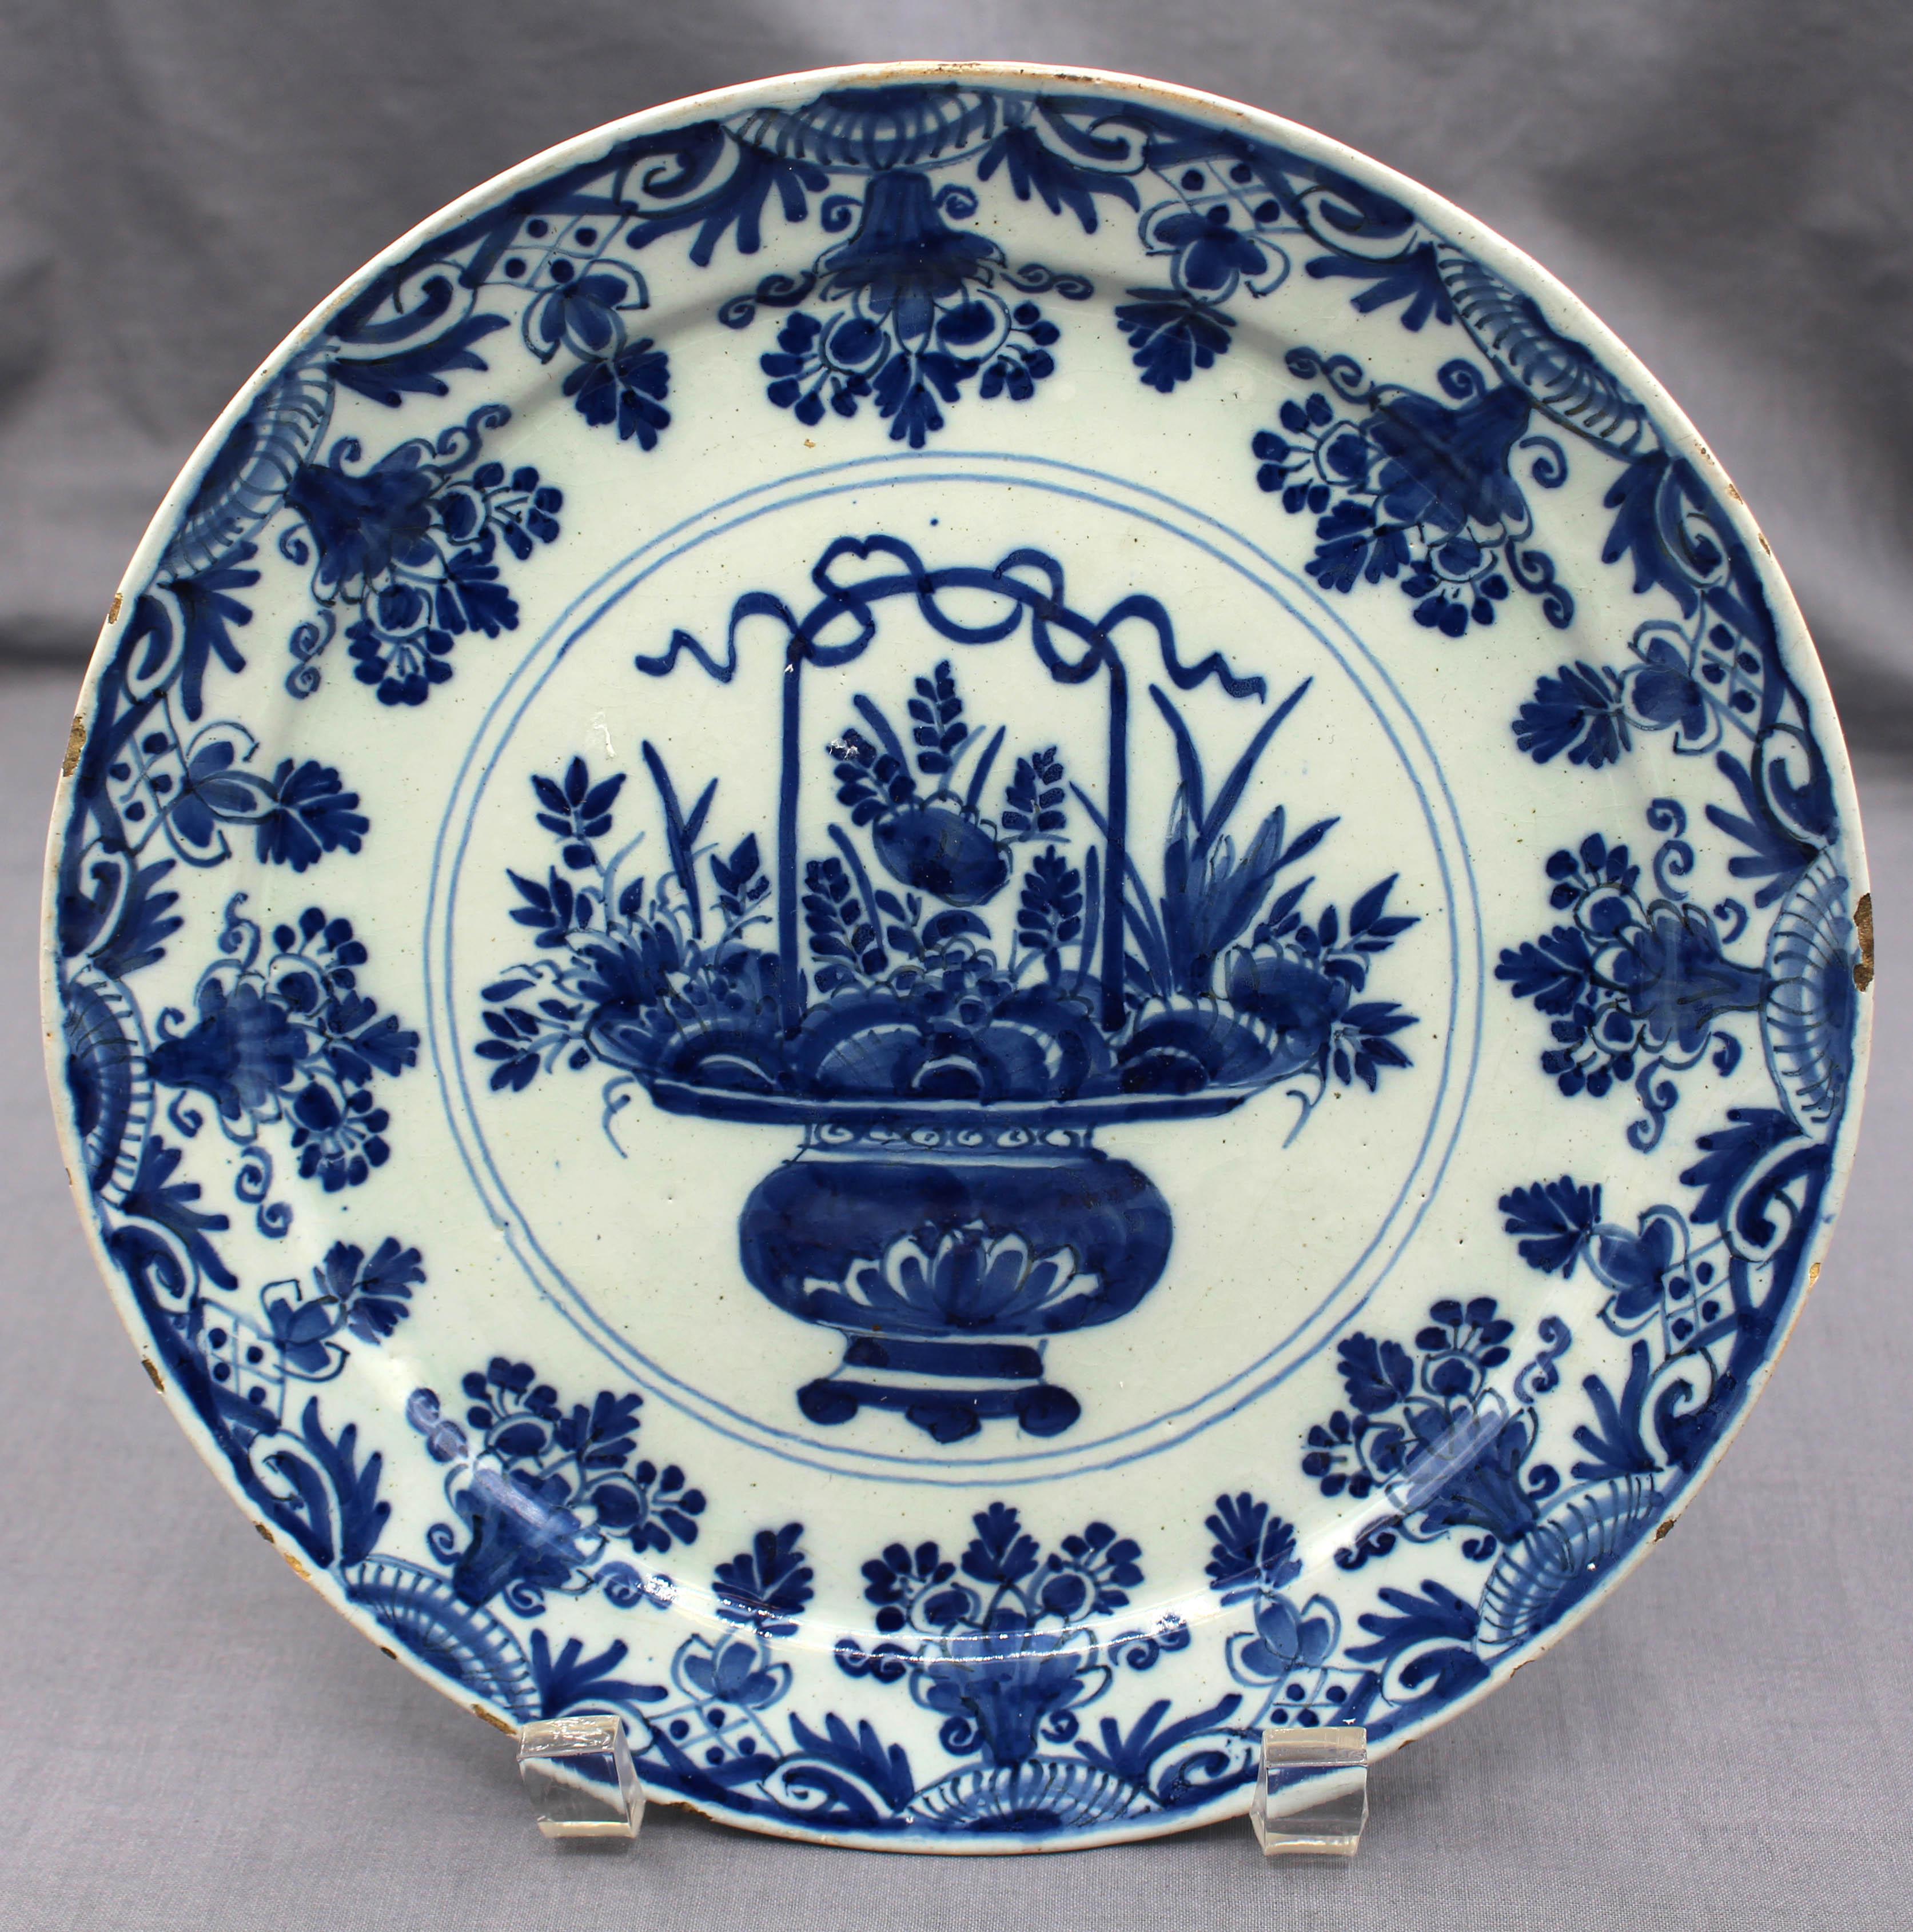 Vers 1770, assiette en bleu et blanc de Delft. Vase central à anse et pied débordant de fleurs, entouré d'une alternance de vases floraux répétitifs et de motifs naturalistes. Fruits correspondant au matériau, à l'âge et à l'utilisation.
8.75